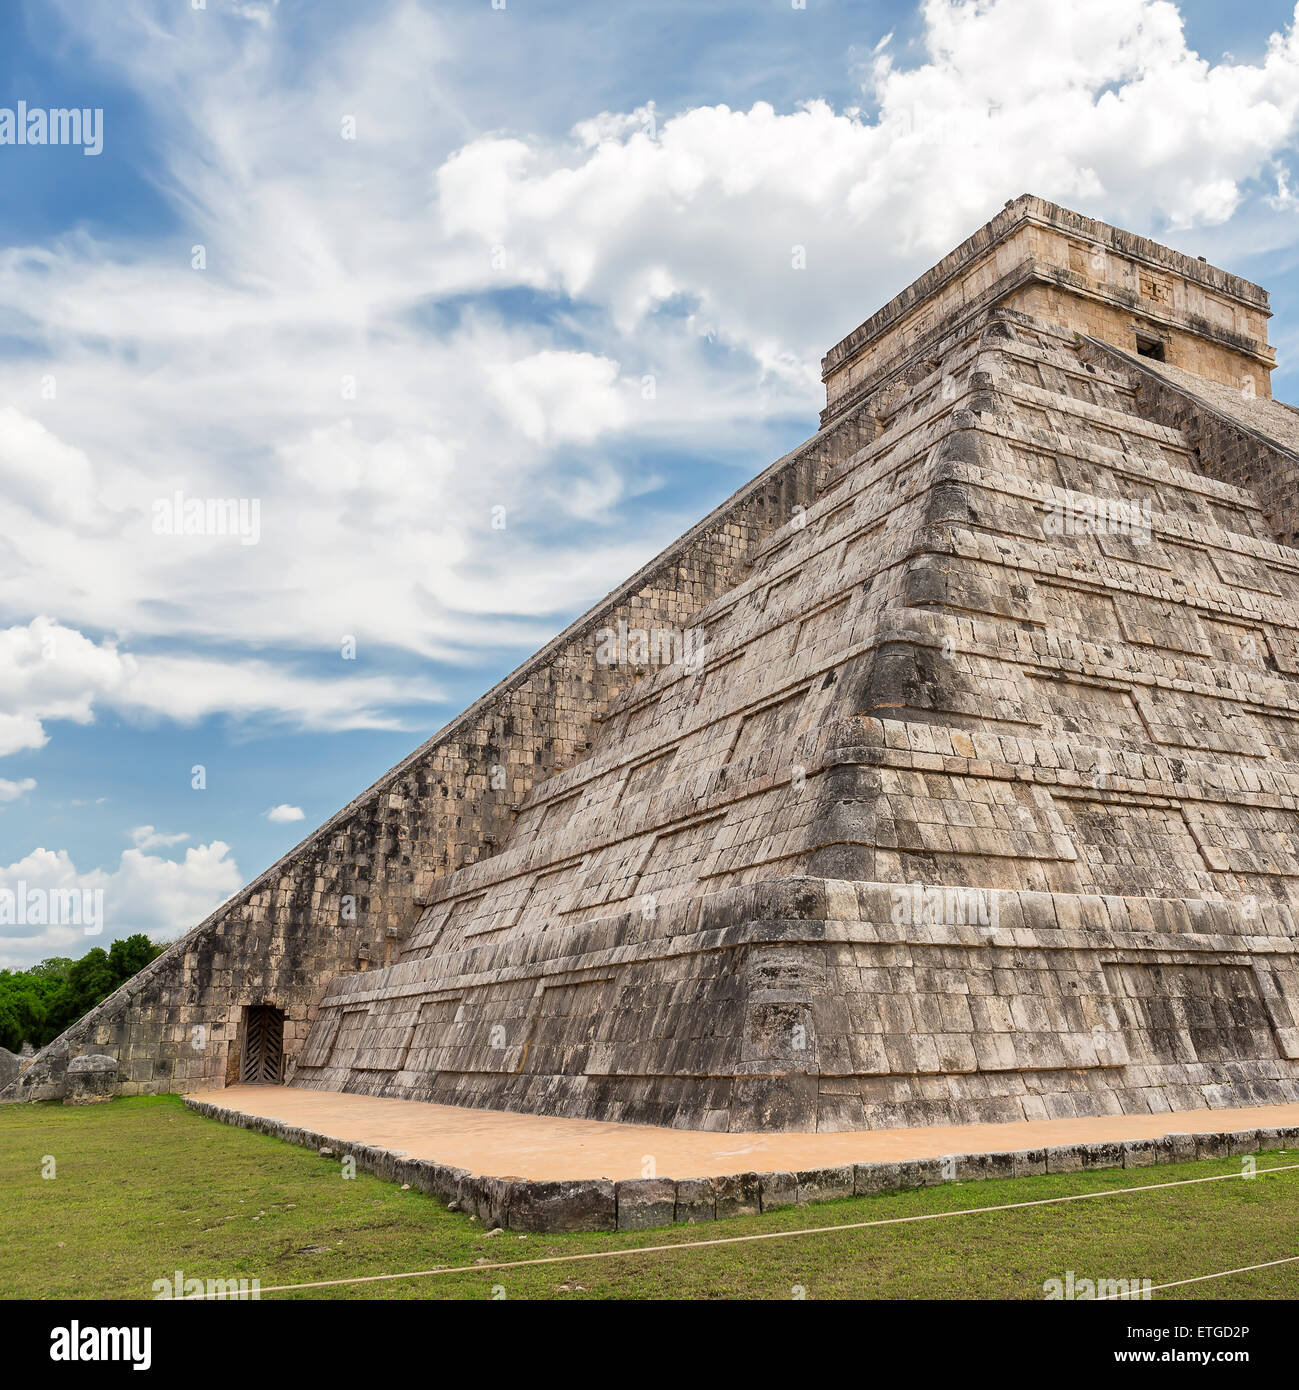 El Castillo (Kukulkan tempio) di Chichen Itza, piramide Maya nello Yucatan, Messico Foto Stock